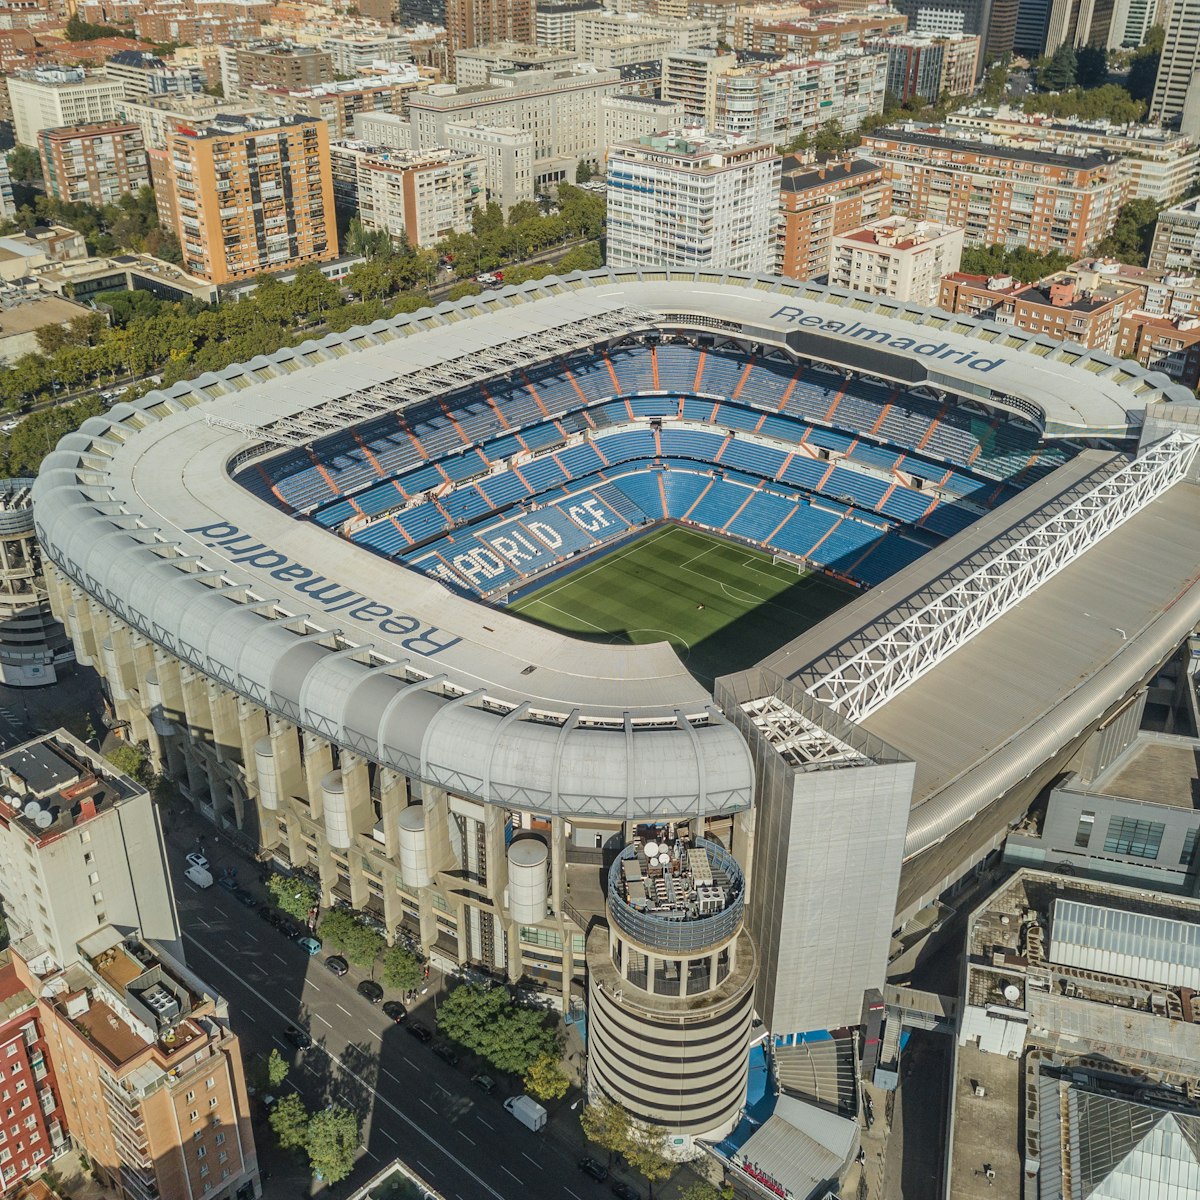 MADRID, SPAIN, OCTOBER 2018 - Aerial view of Santiago Bernabeu stadium
1069599884
Aerial view of Santiago Bernabeu stadium in Madrid